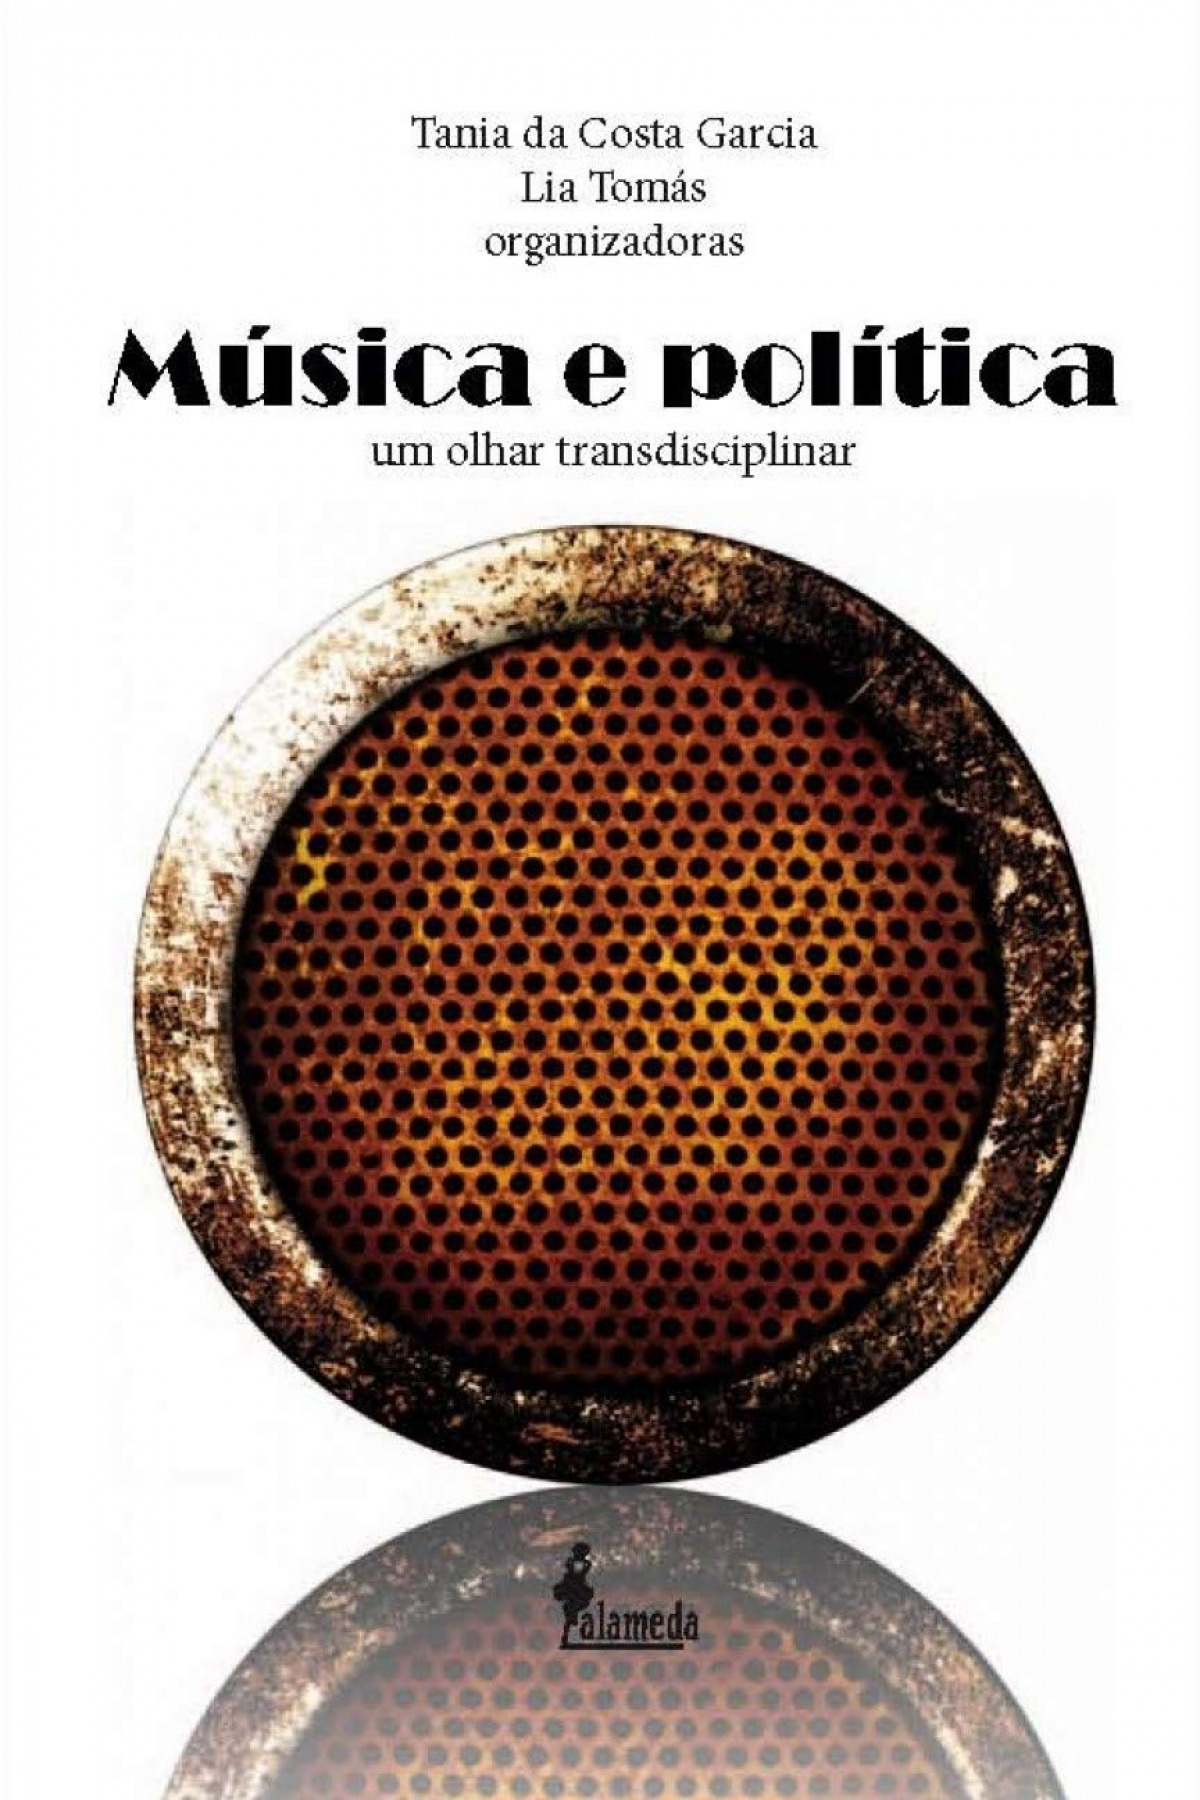 Musica e politica - Lia Tomas E TÂnia Da Costa Garcia